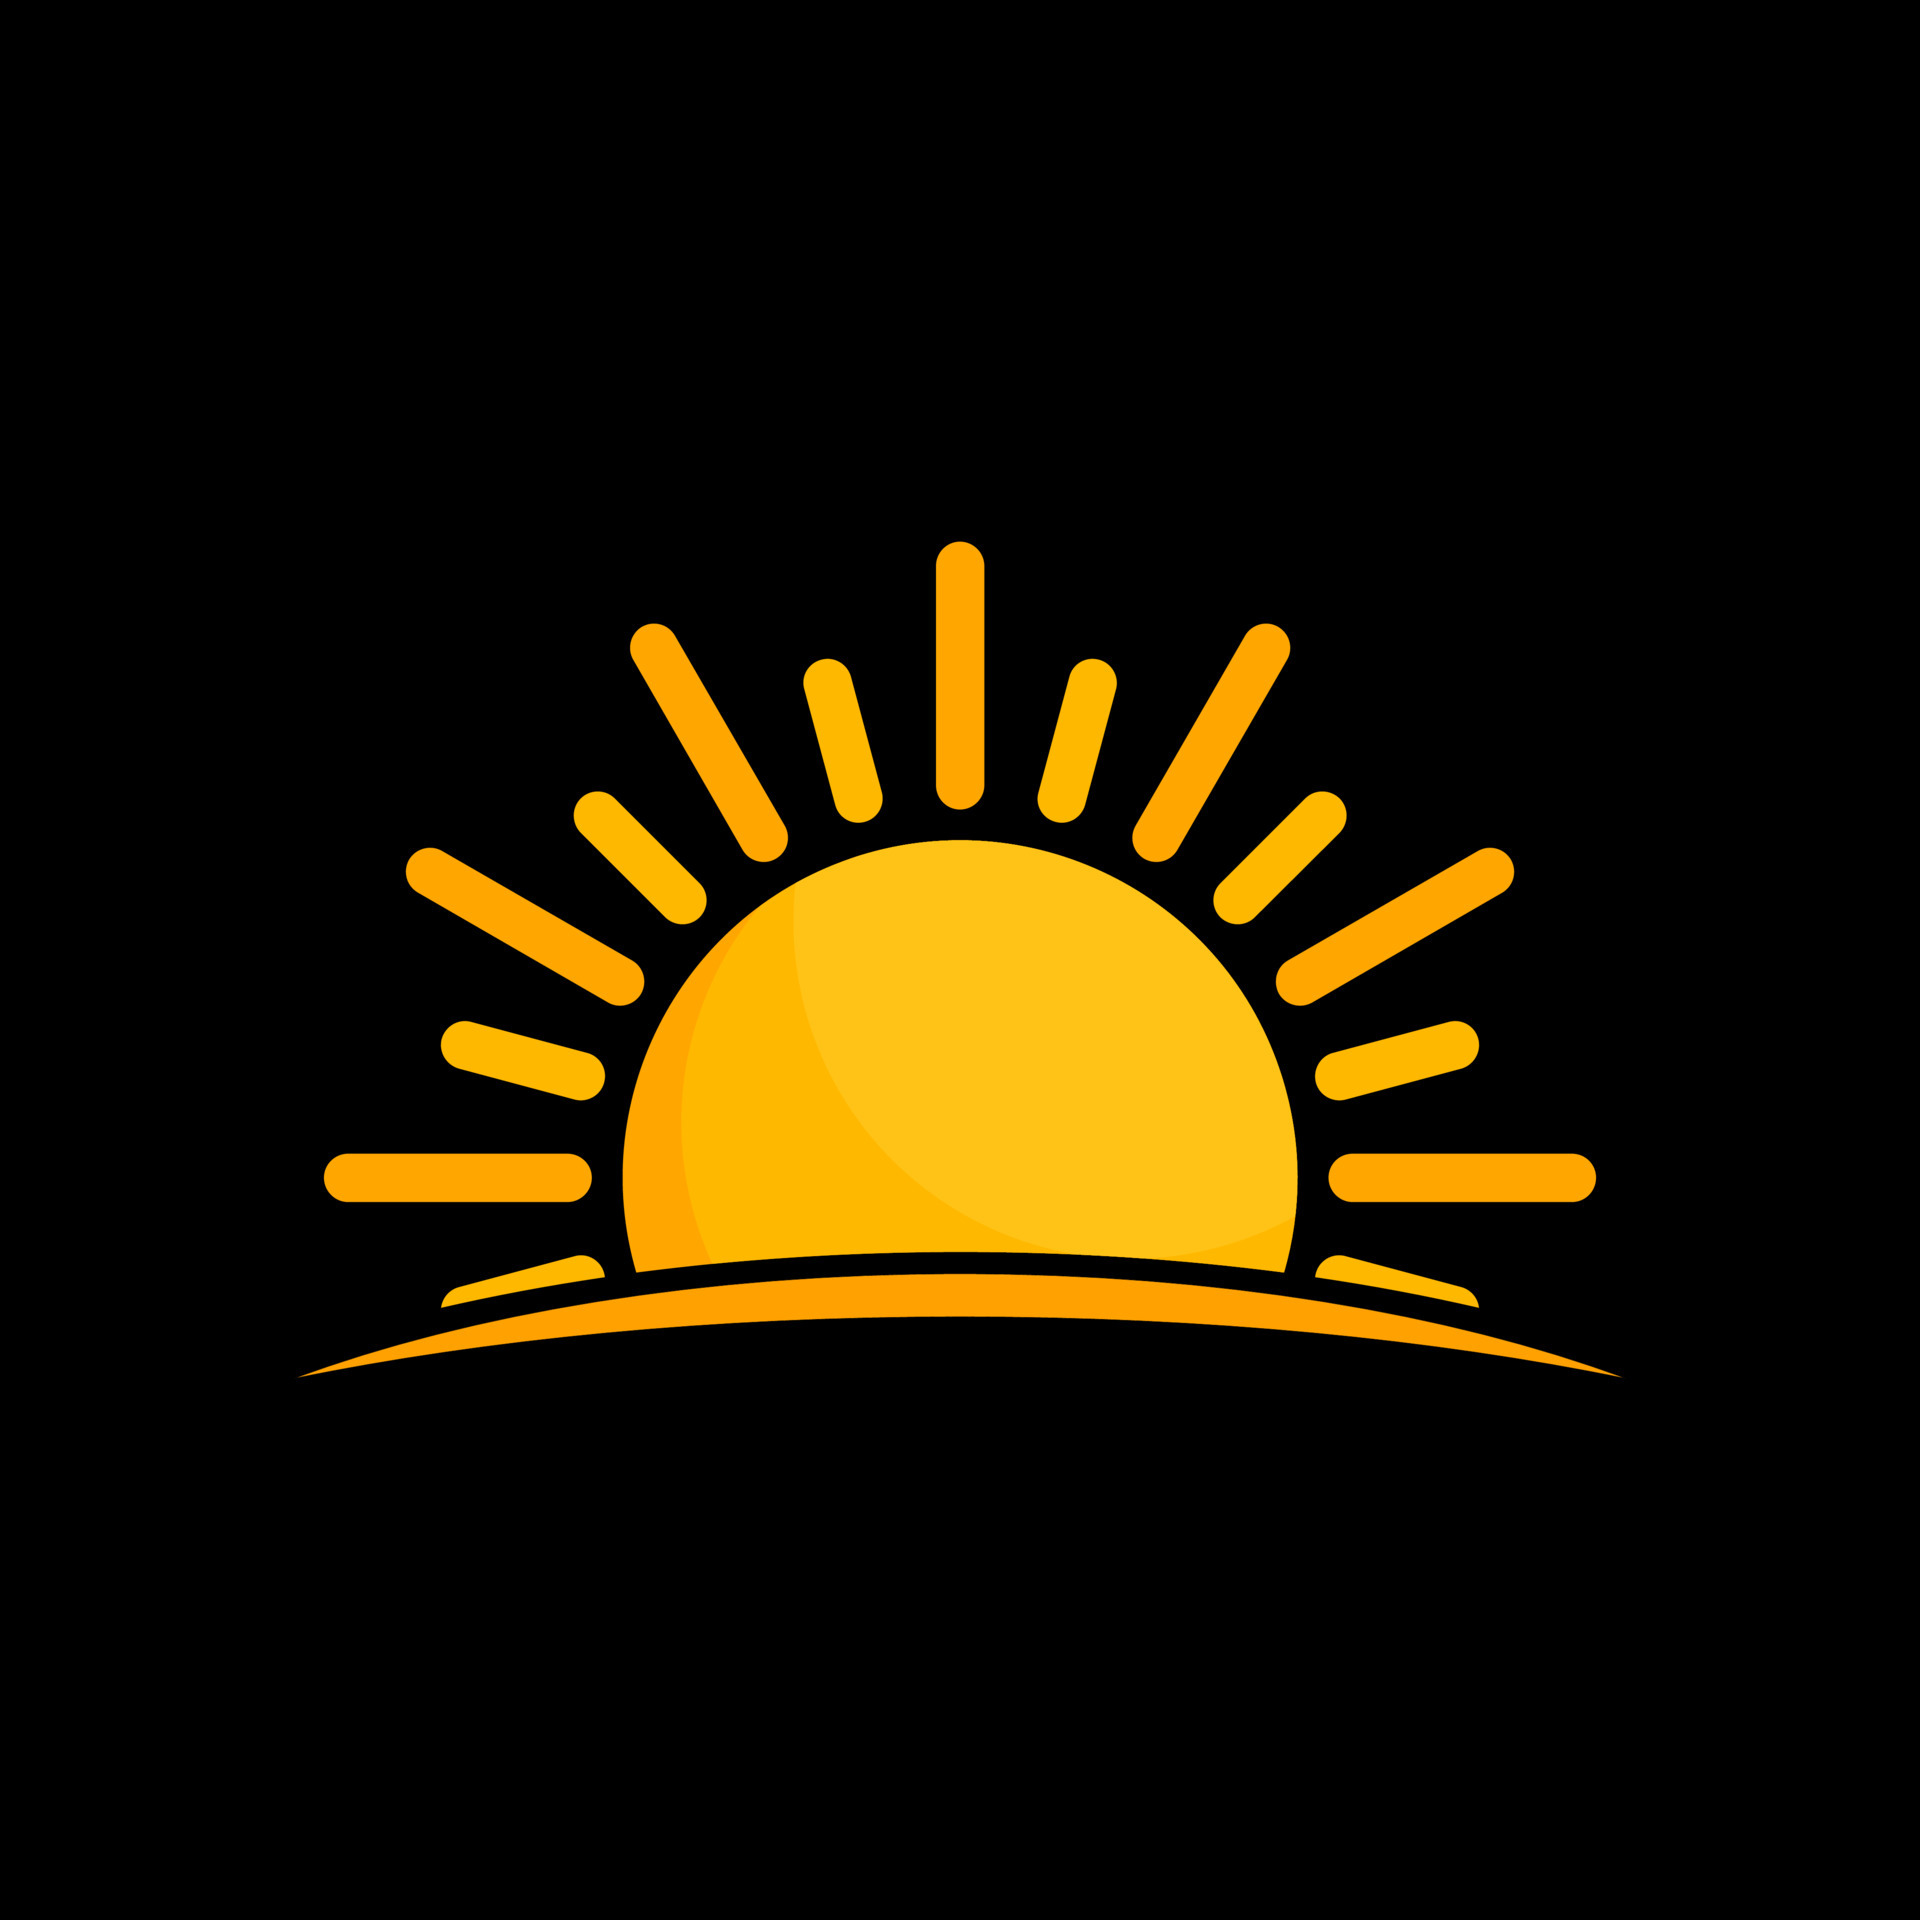 Hình biểu tượng Mặt Trời: Đón xem hình biểu tượng Mặt Trời đầy sắc màu và năng lượng để tận hưởng cảm giác hài lòng và yên bình.